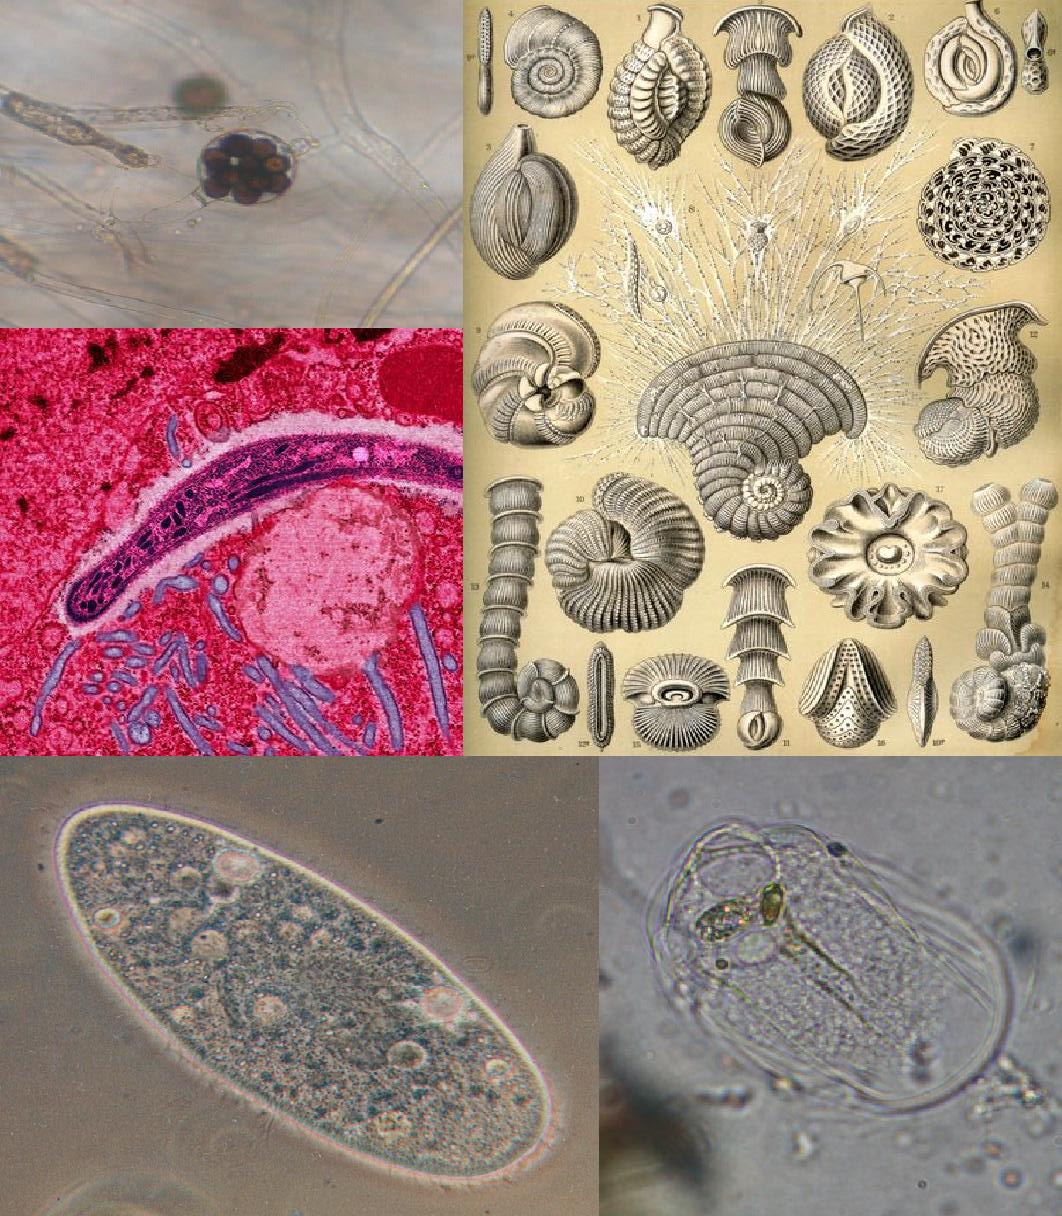 Непатогенные амебы кишечника – безопасные соседи или паразиты?